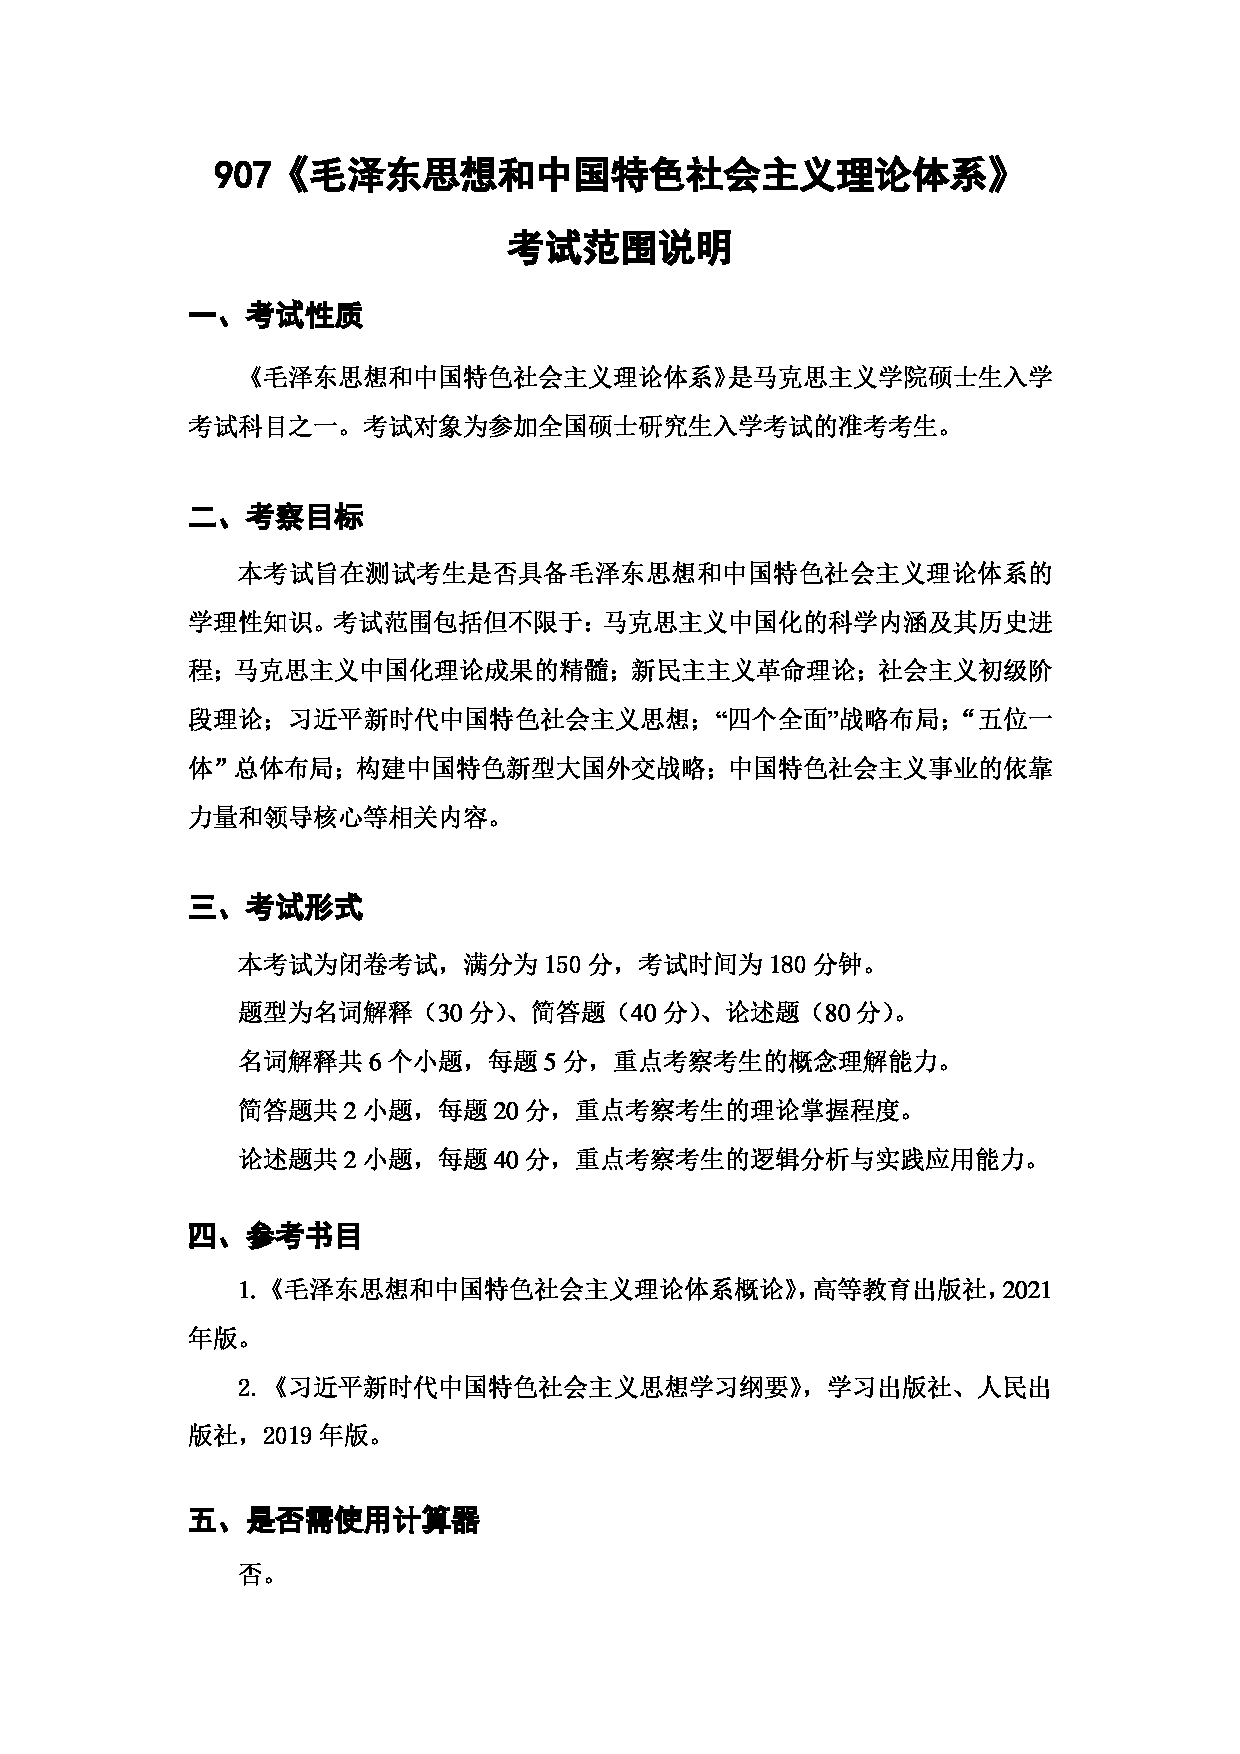 上海海洋大学2023年考研自命题科目 907《毛泽东思想和中国特色社会主义理论体系》 考试范围第1页